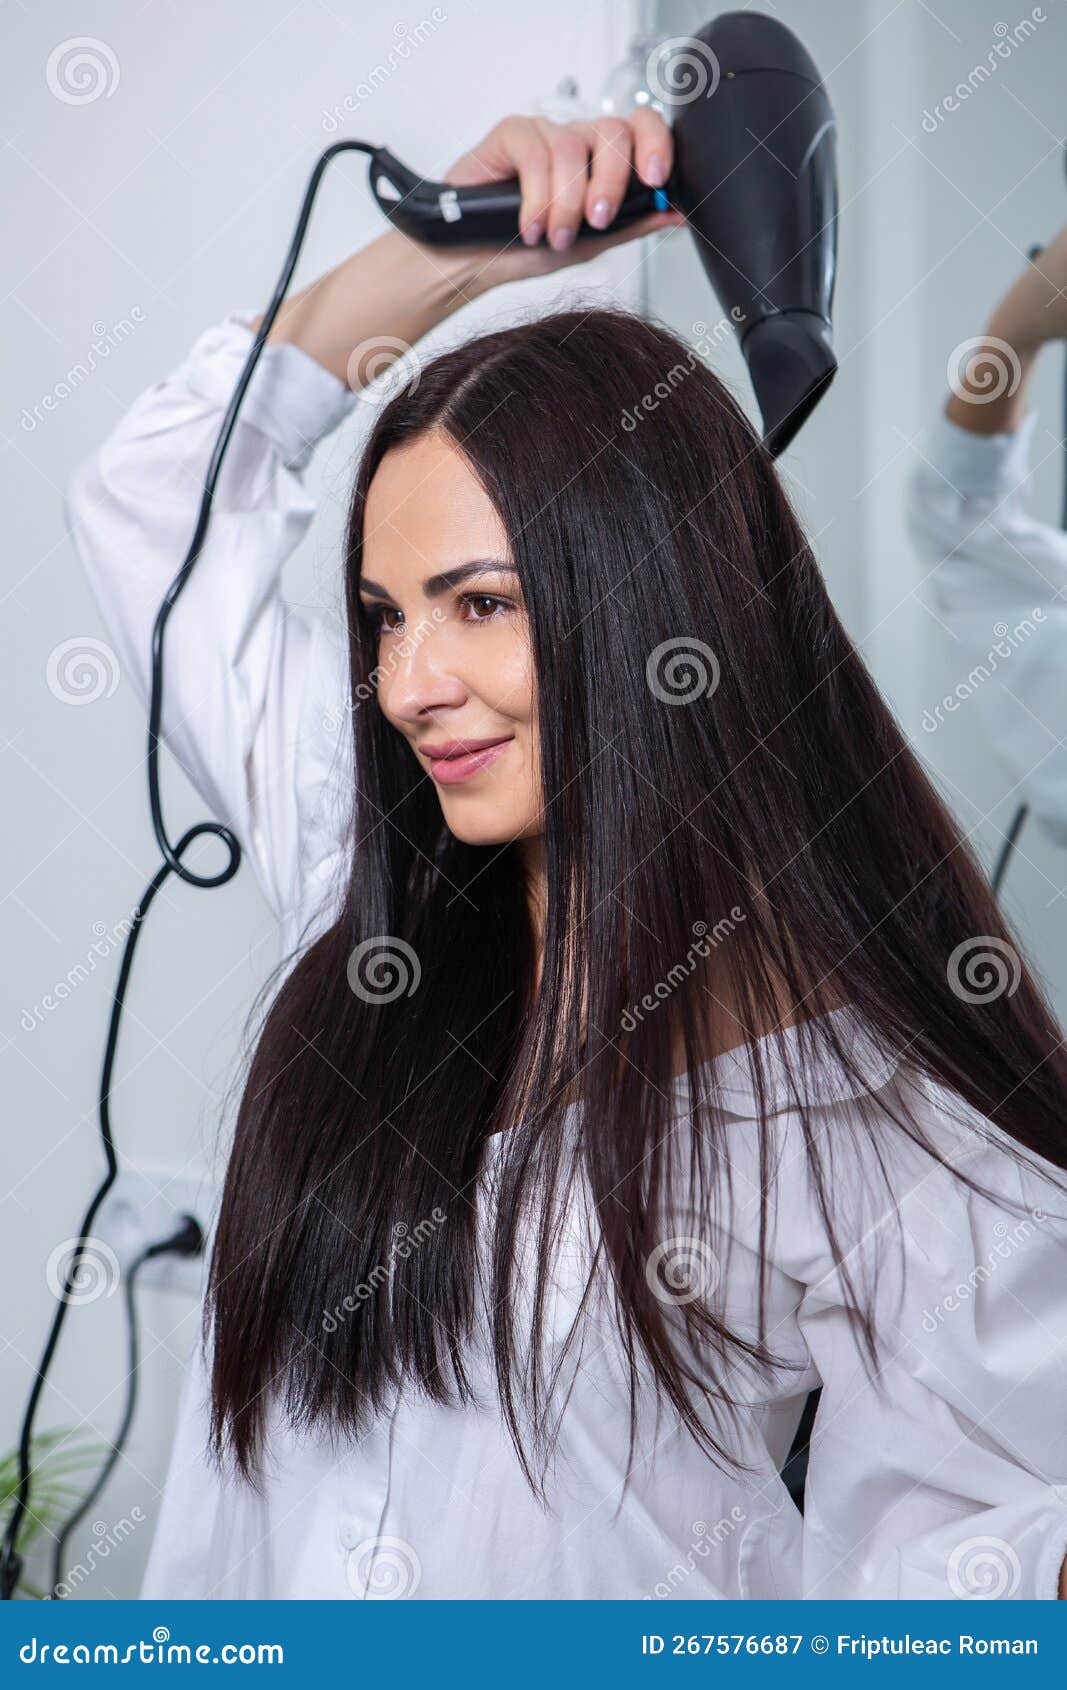 Cabeleireiro: você sabe usar o secador de cabelo corretamente